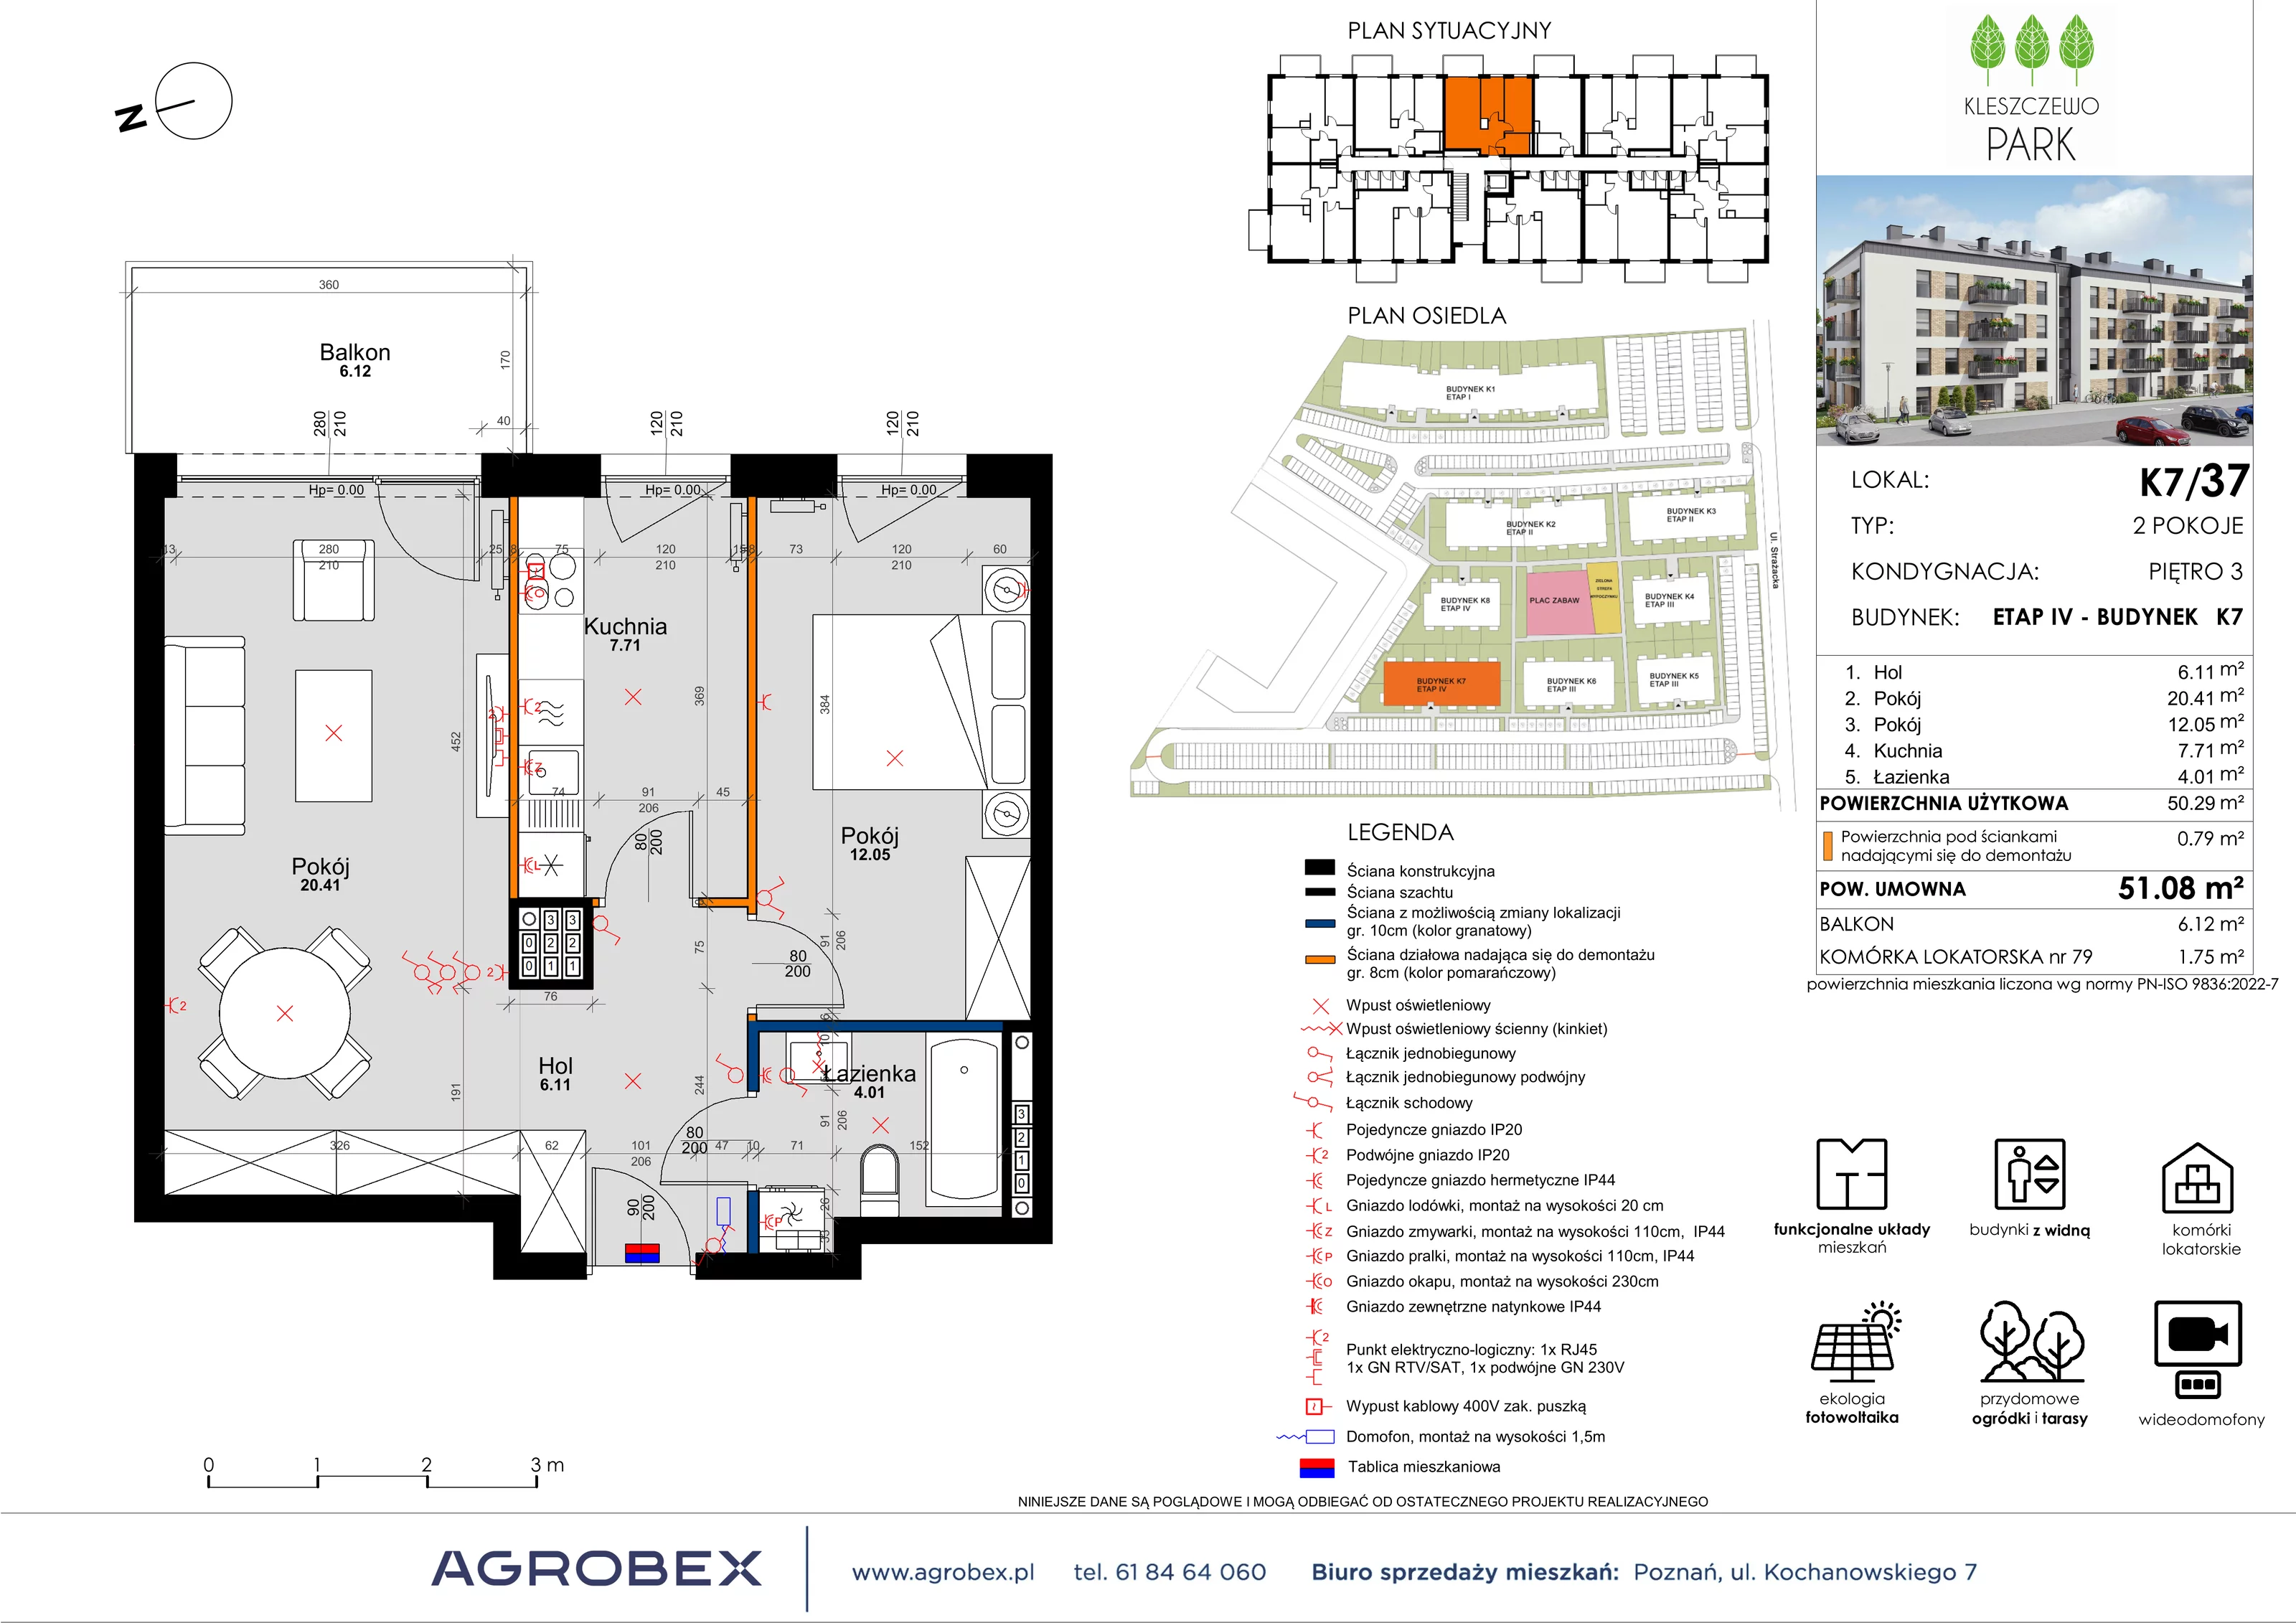 Mieszkanie 51,07 m², piętro 3, oferta nr K7/37, Kleszczewo Park, Kleszczewo, ul. Wiesławy Szymborskiej 1